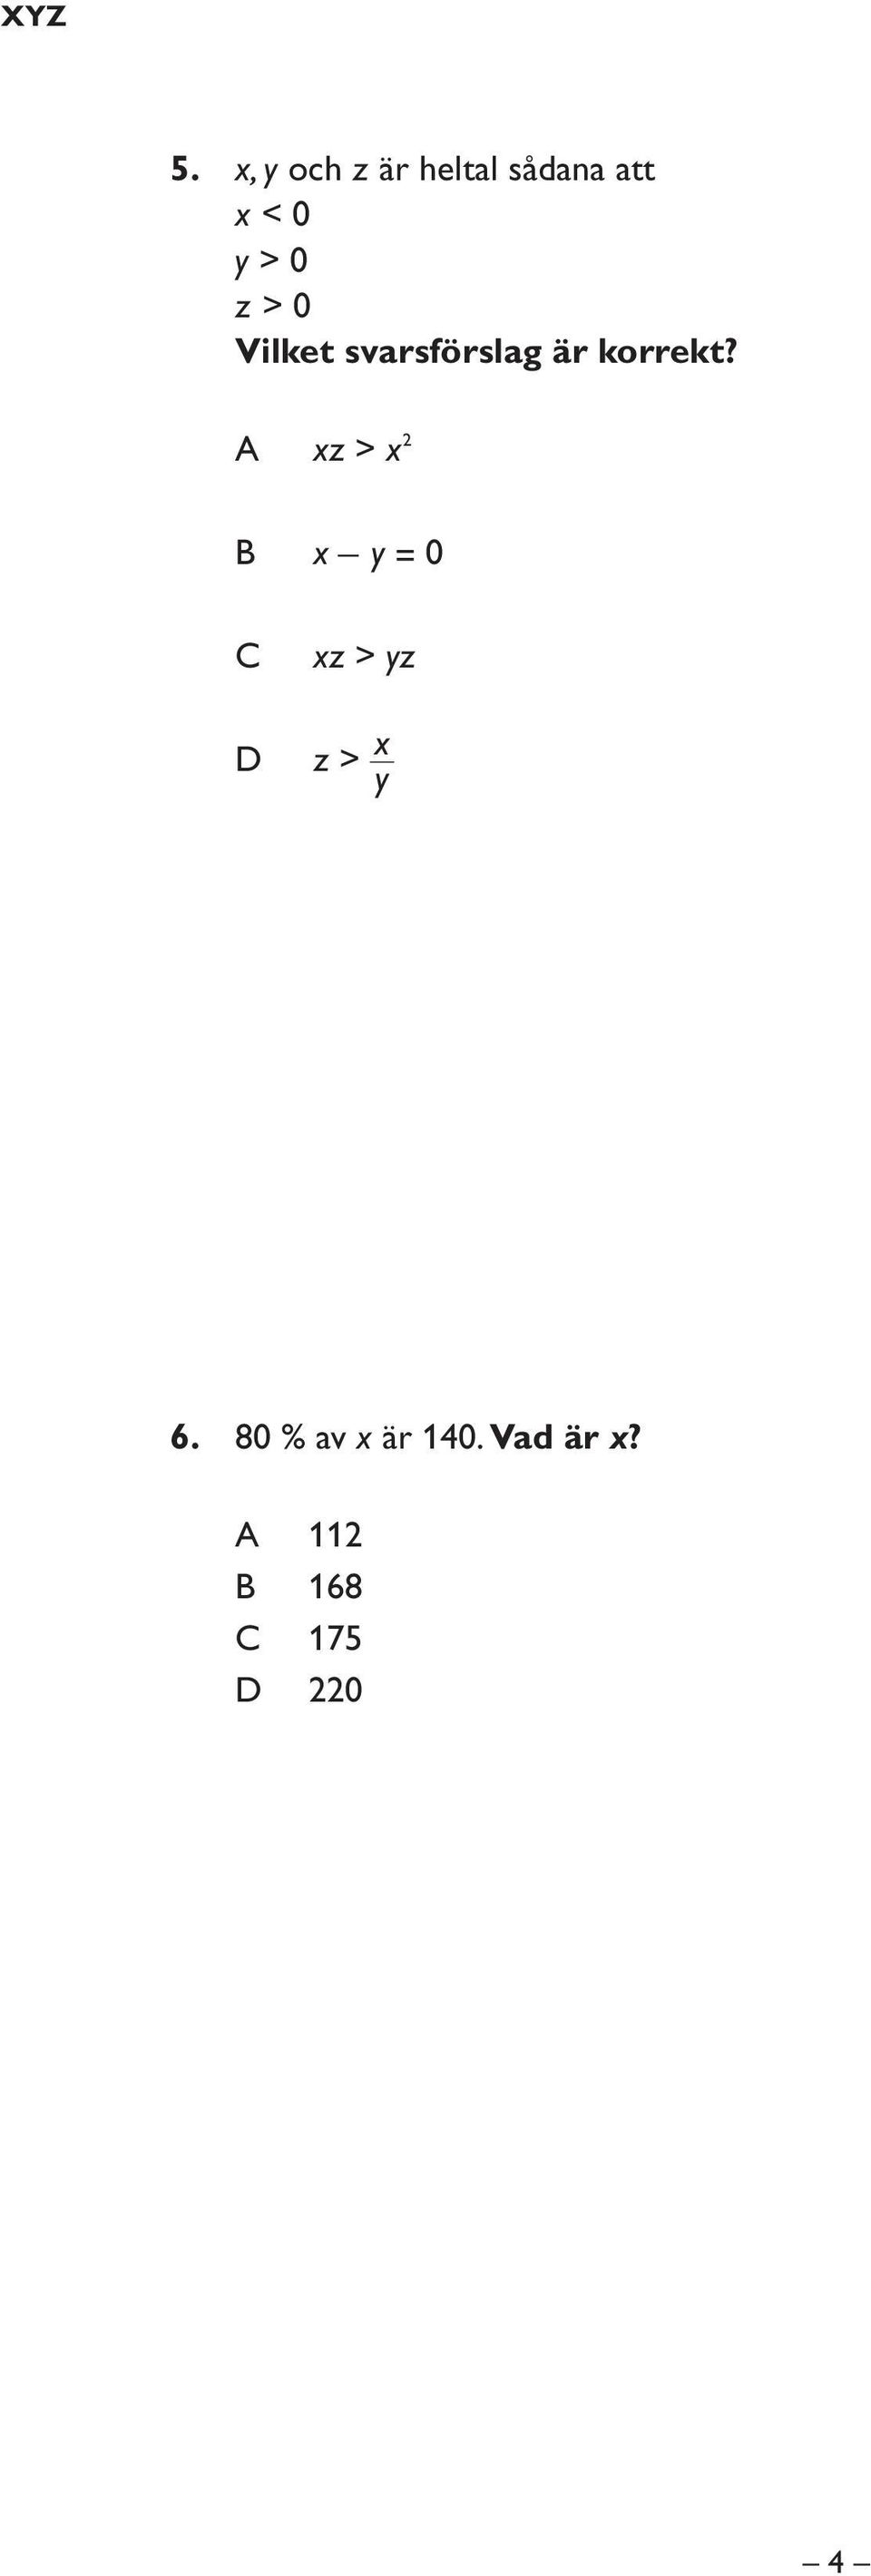 0 z > 0 Vilket svarsförslag är korrekt?